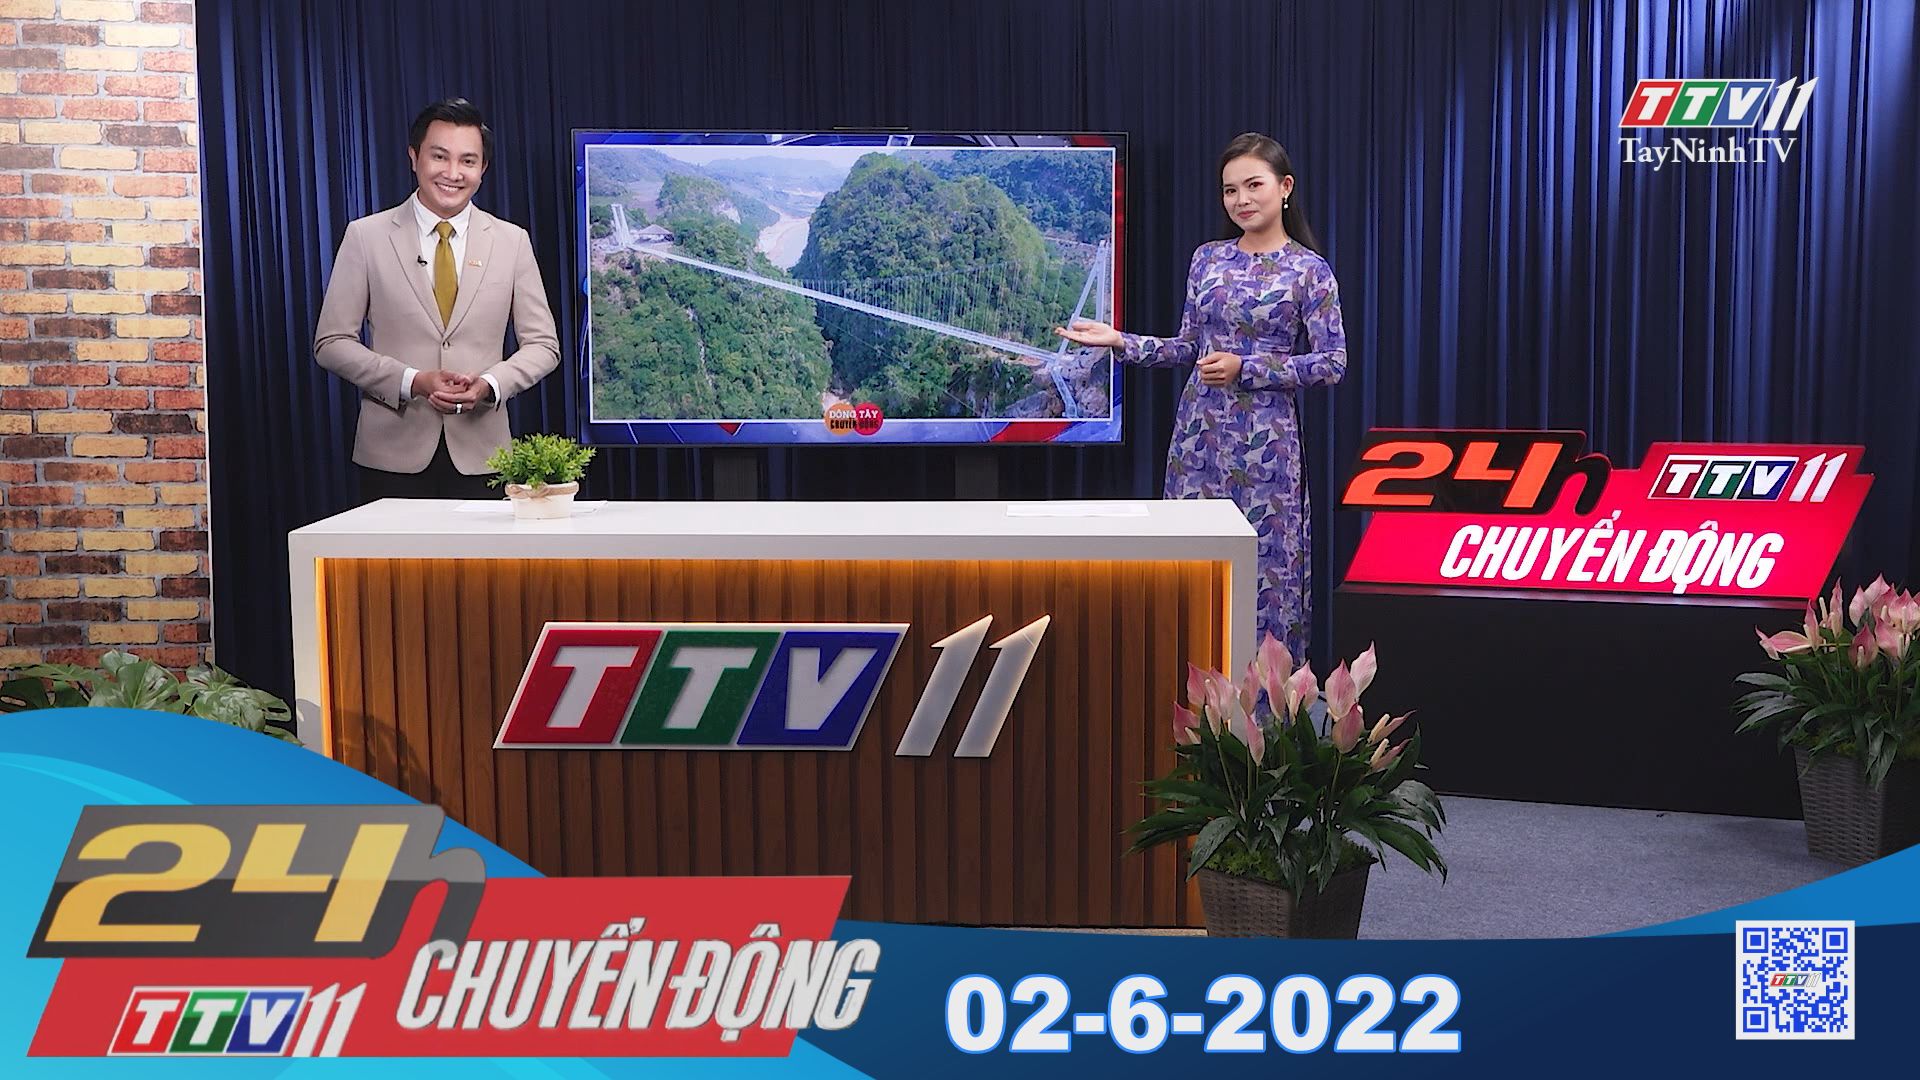 24h Chuyển động 02-6-2022 | Tin tức hôm nay | TayNinhTV